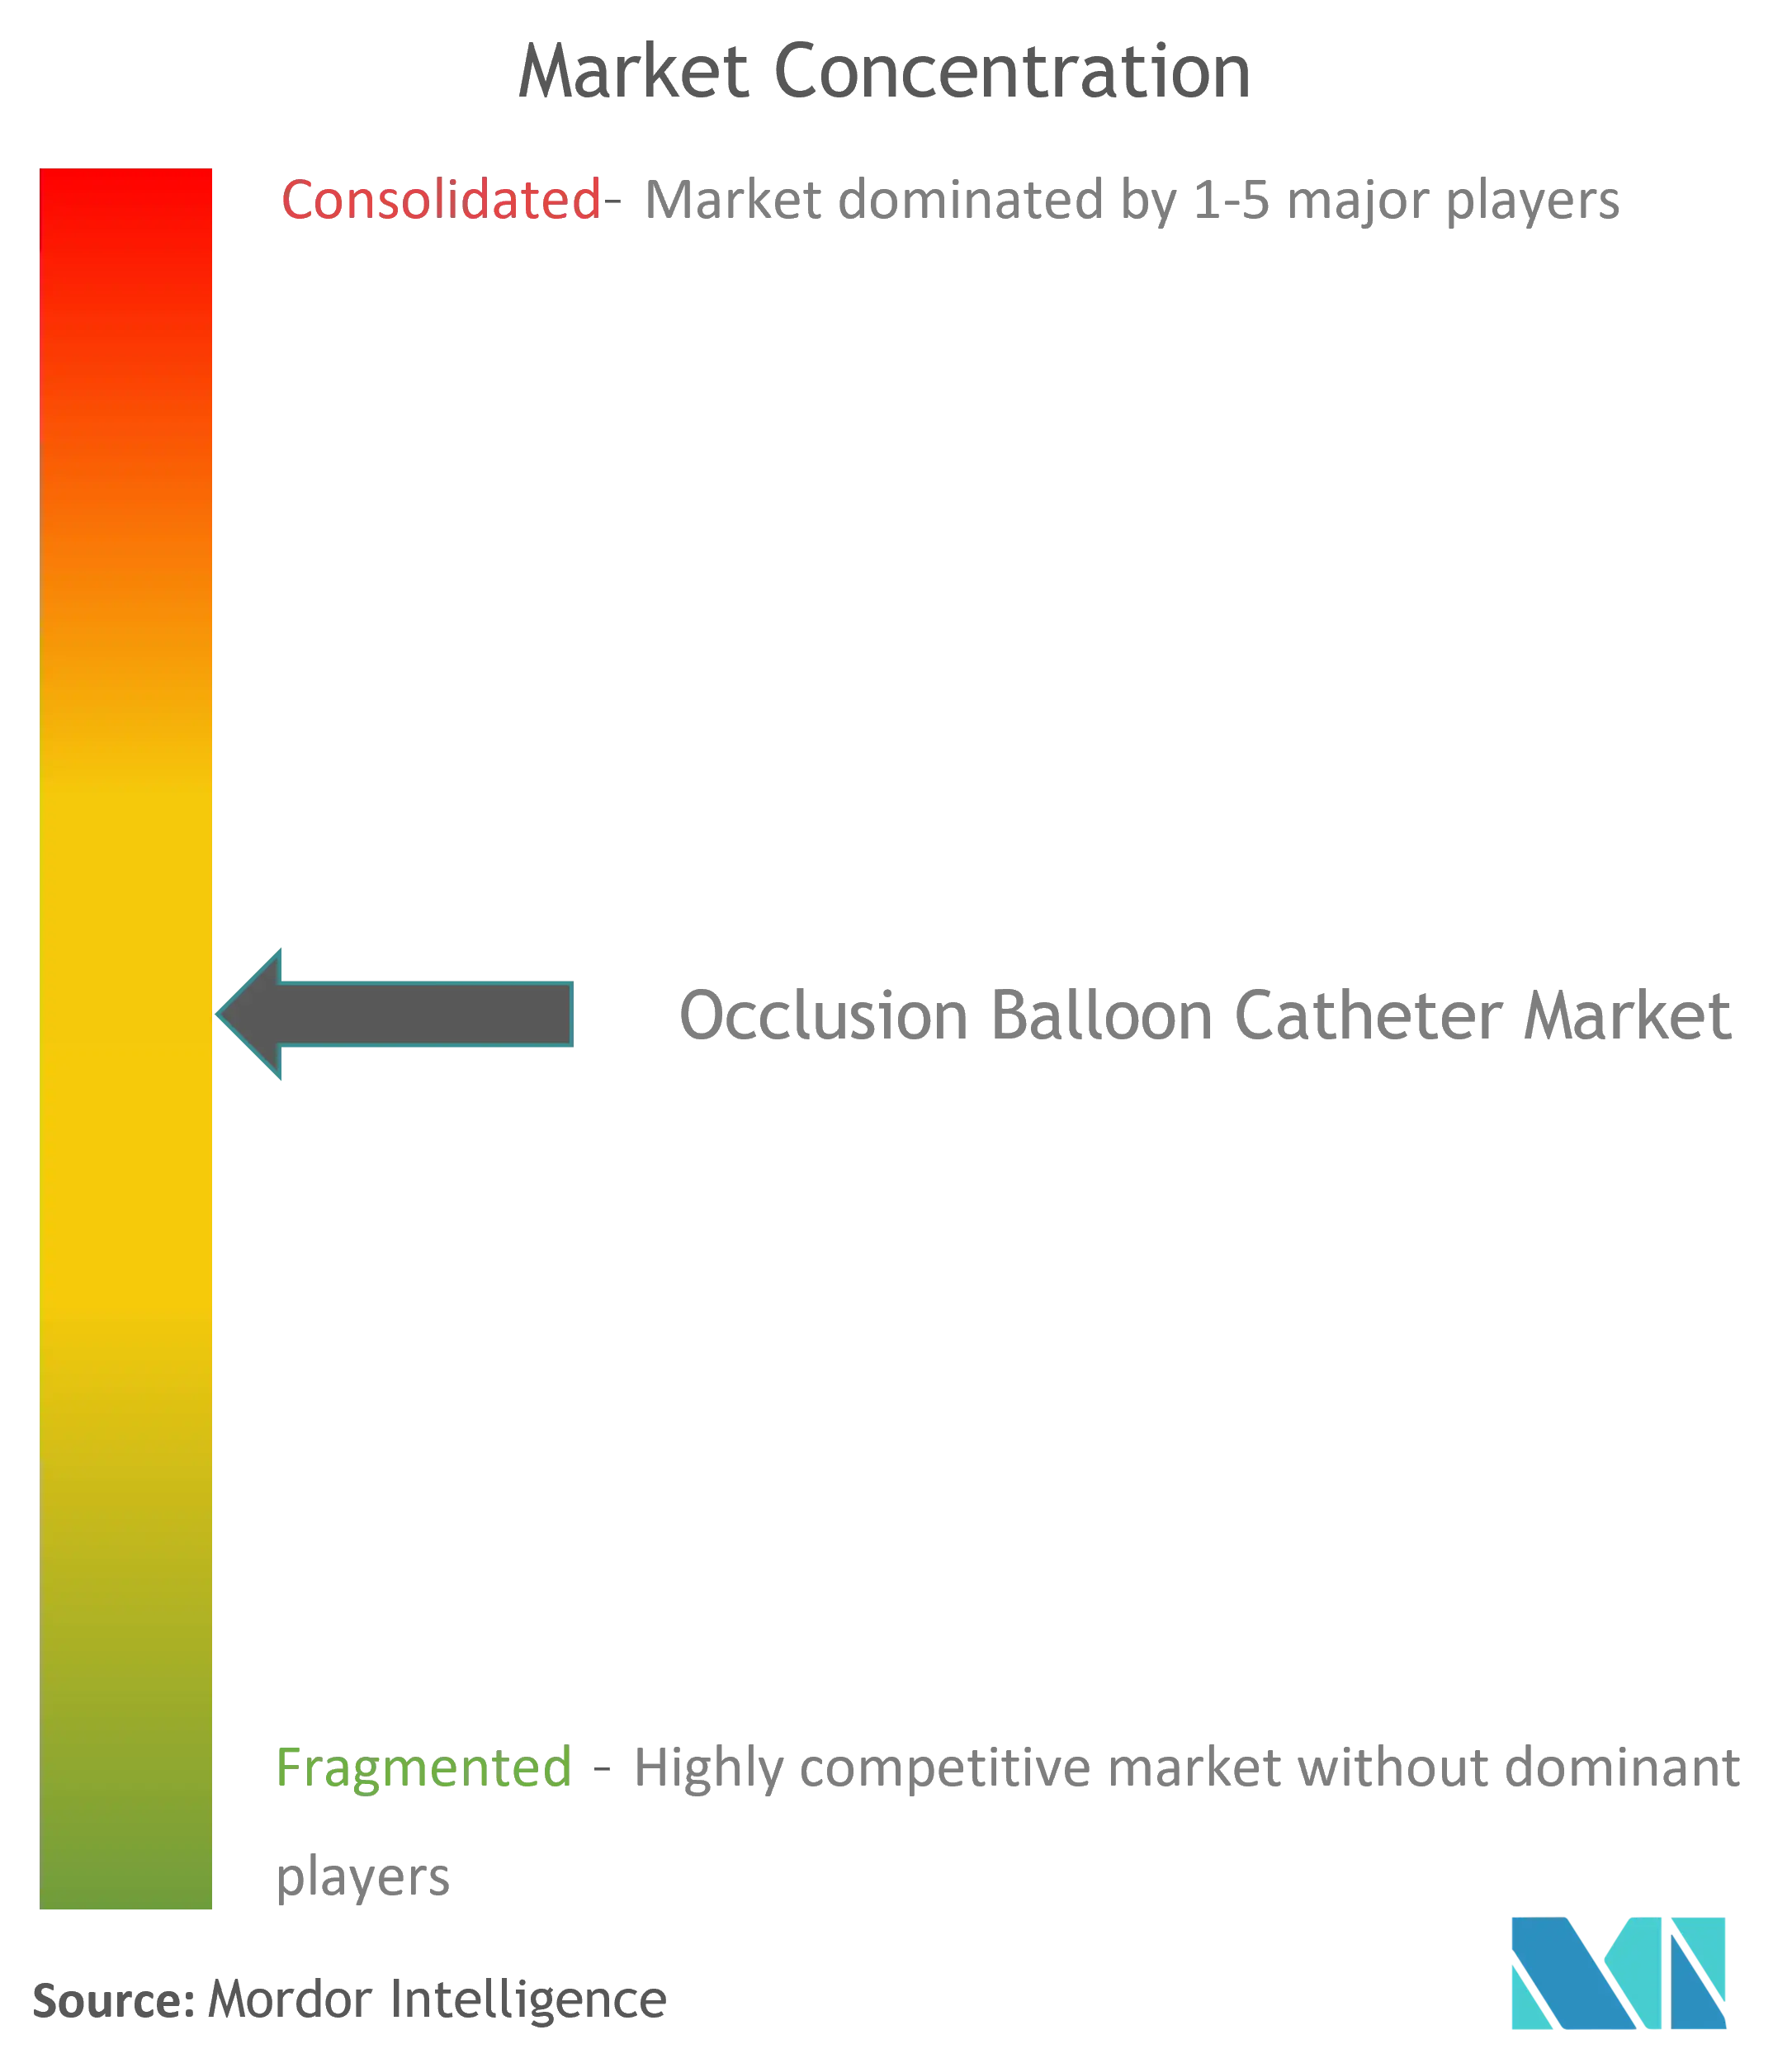 Concentración del mercado de catéteres con balón de oclusión